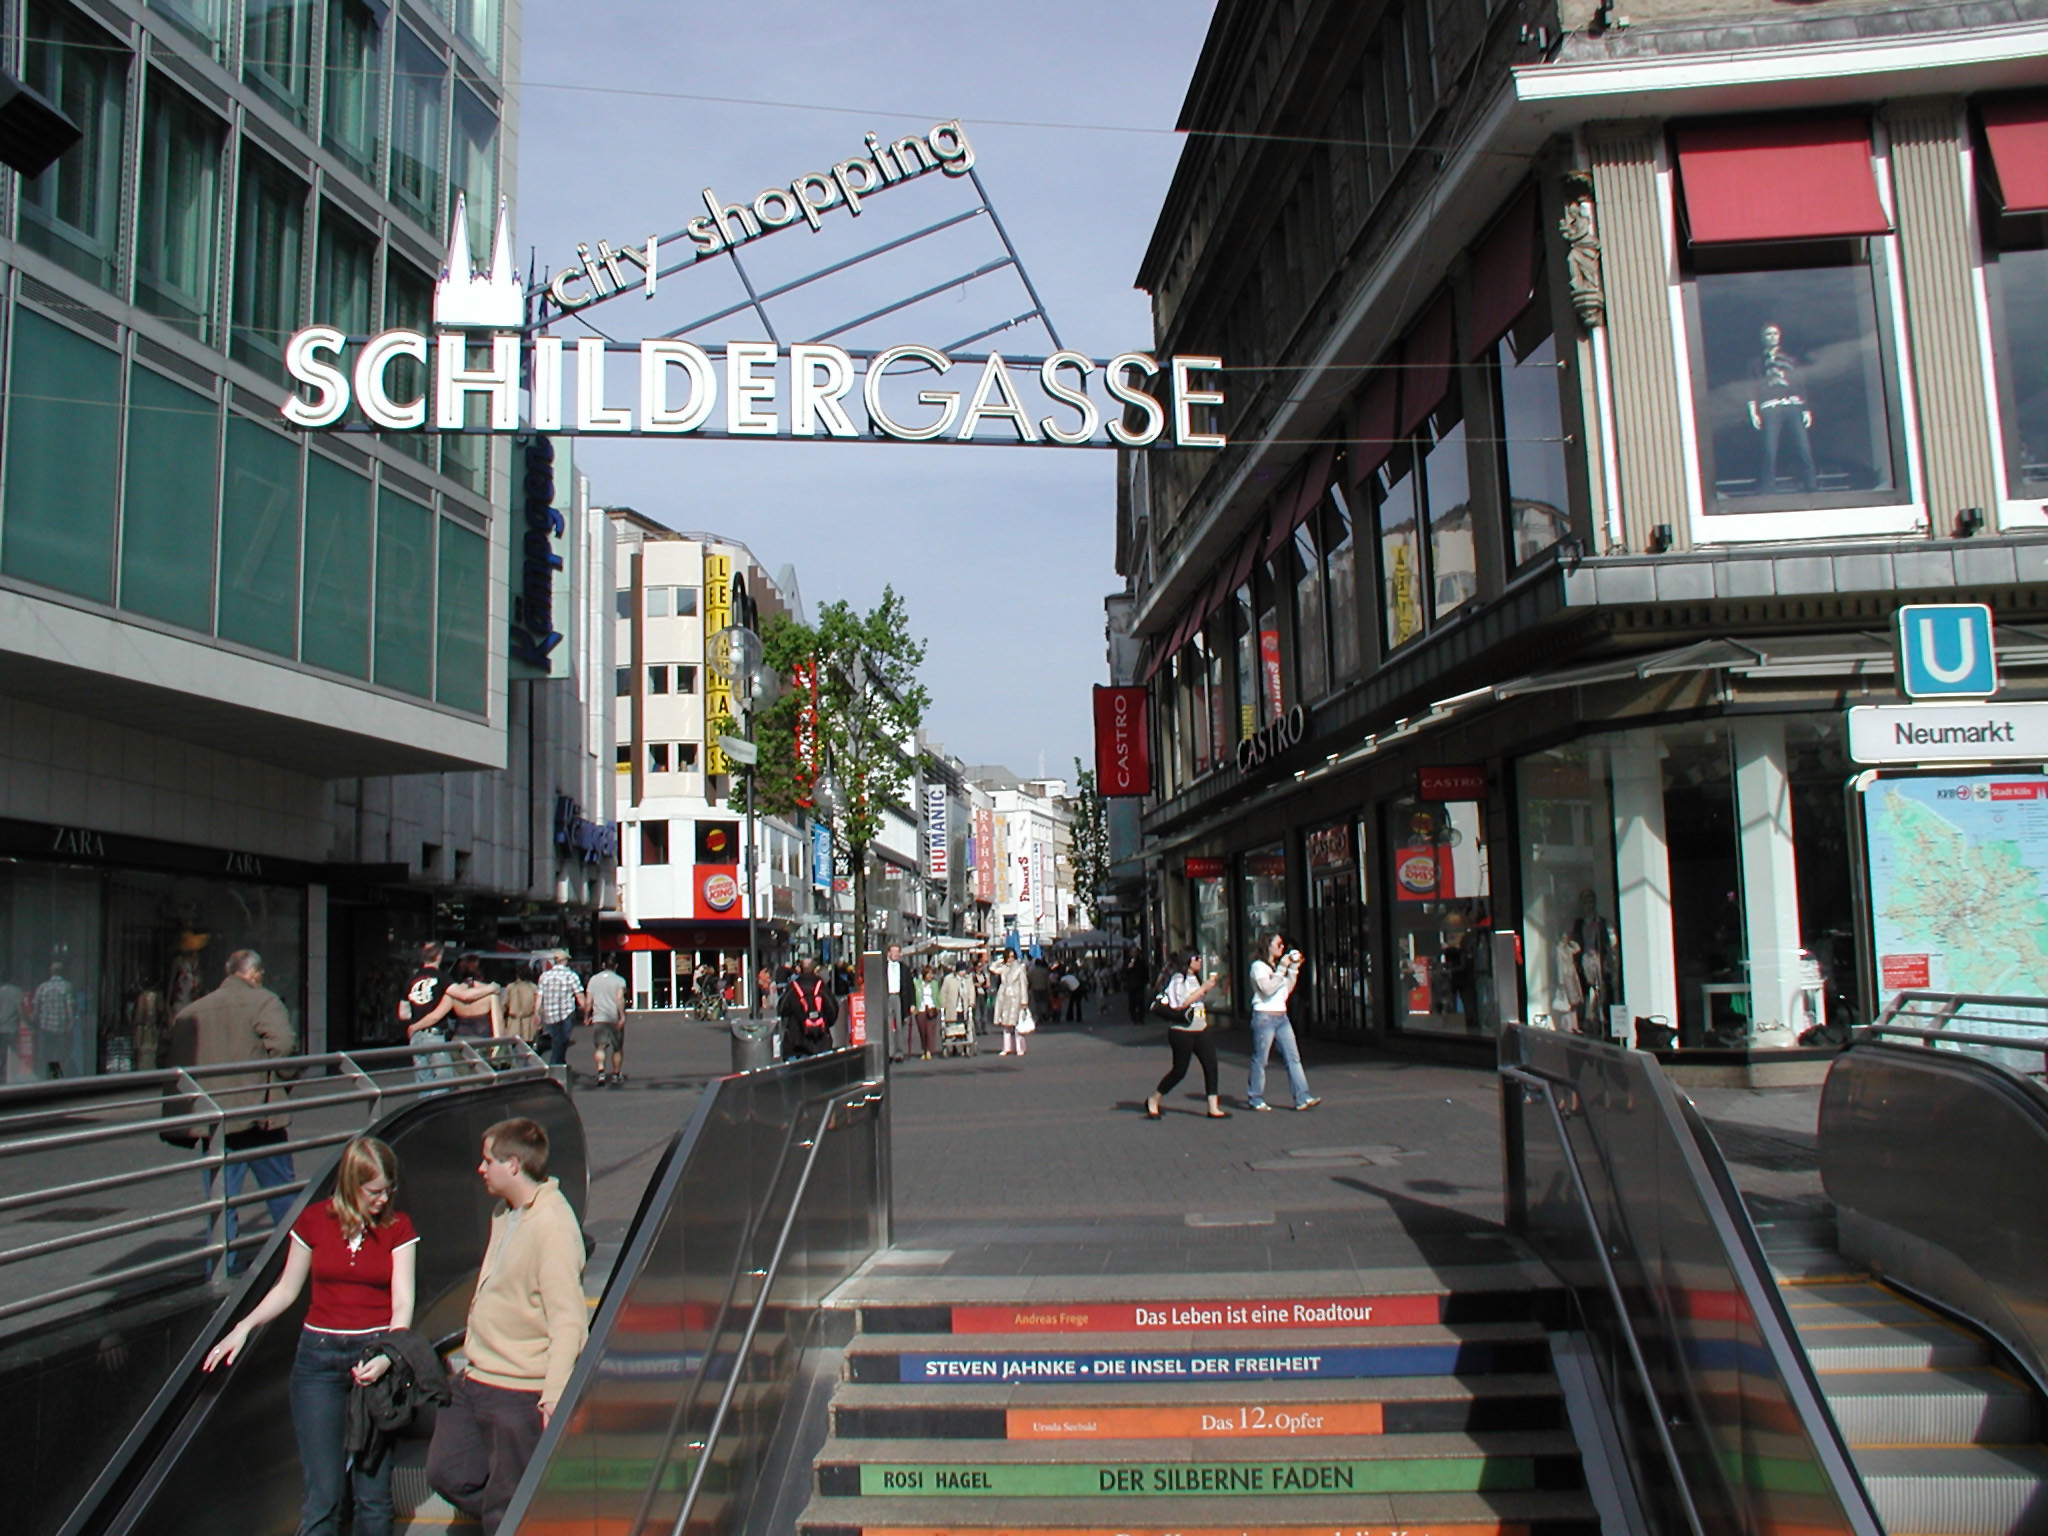 Phố đi bộ Hohe Strasse và Schildergasse - Hohe Strasse and Schildergasse - Cologne - Đức